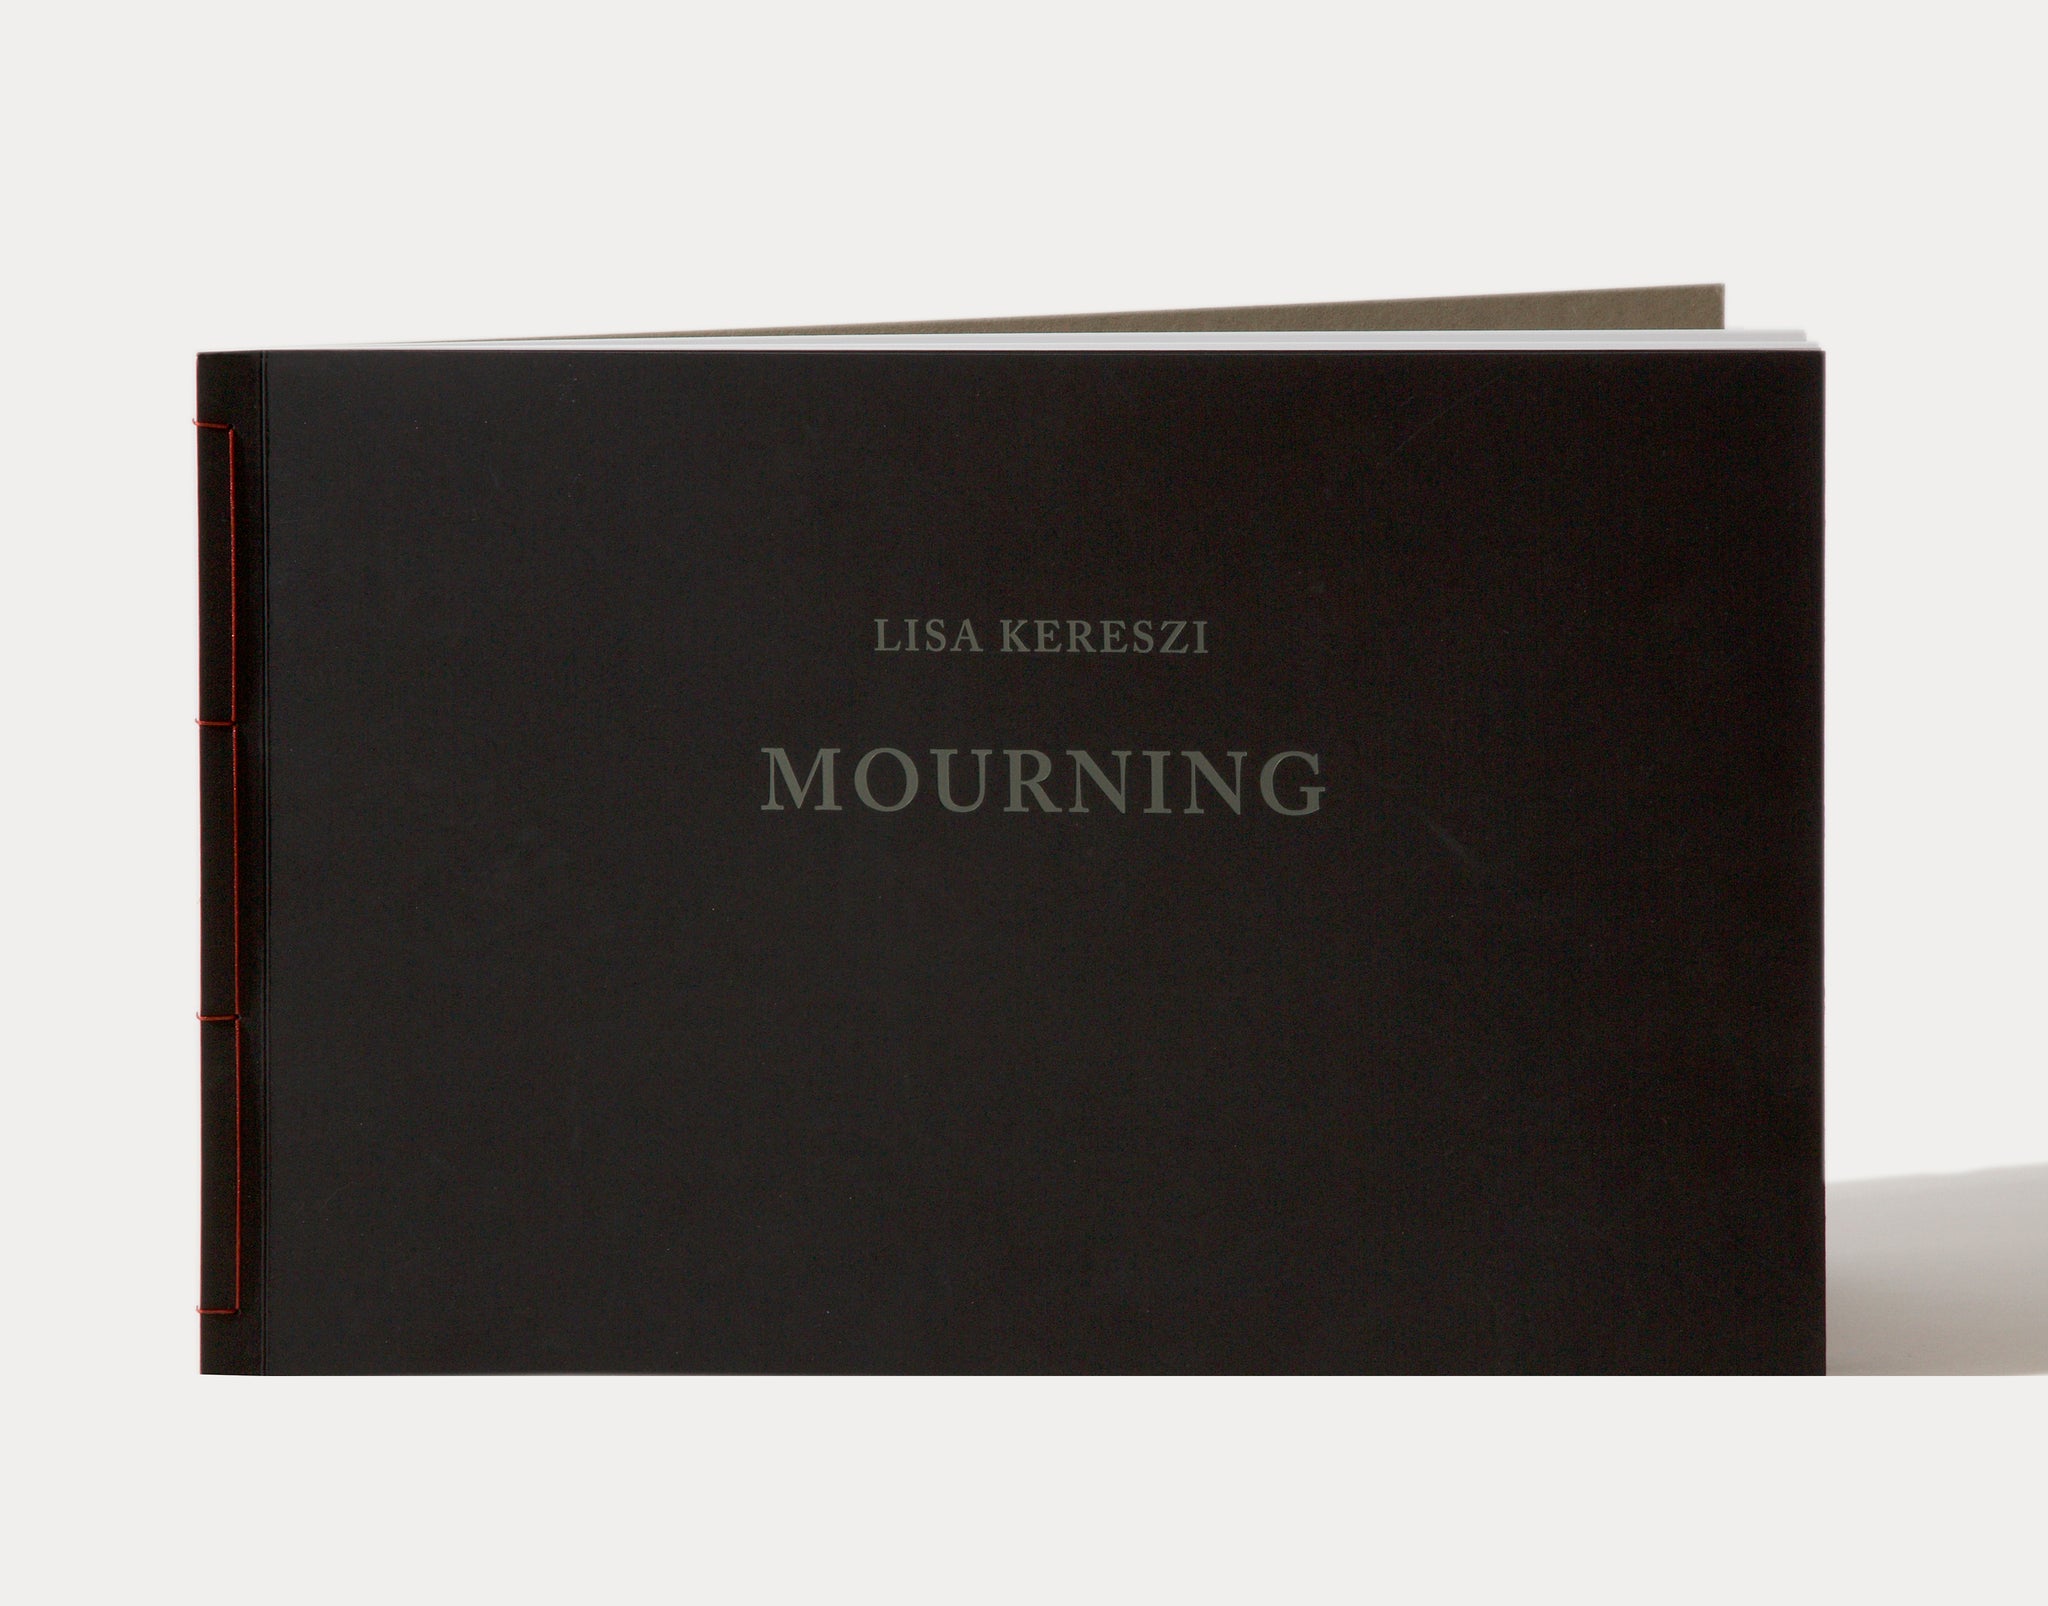 MOURNING by Lisa Kereszi